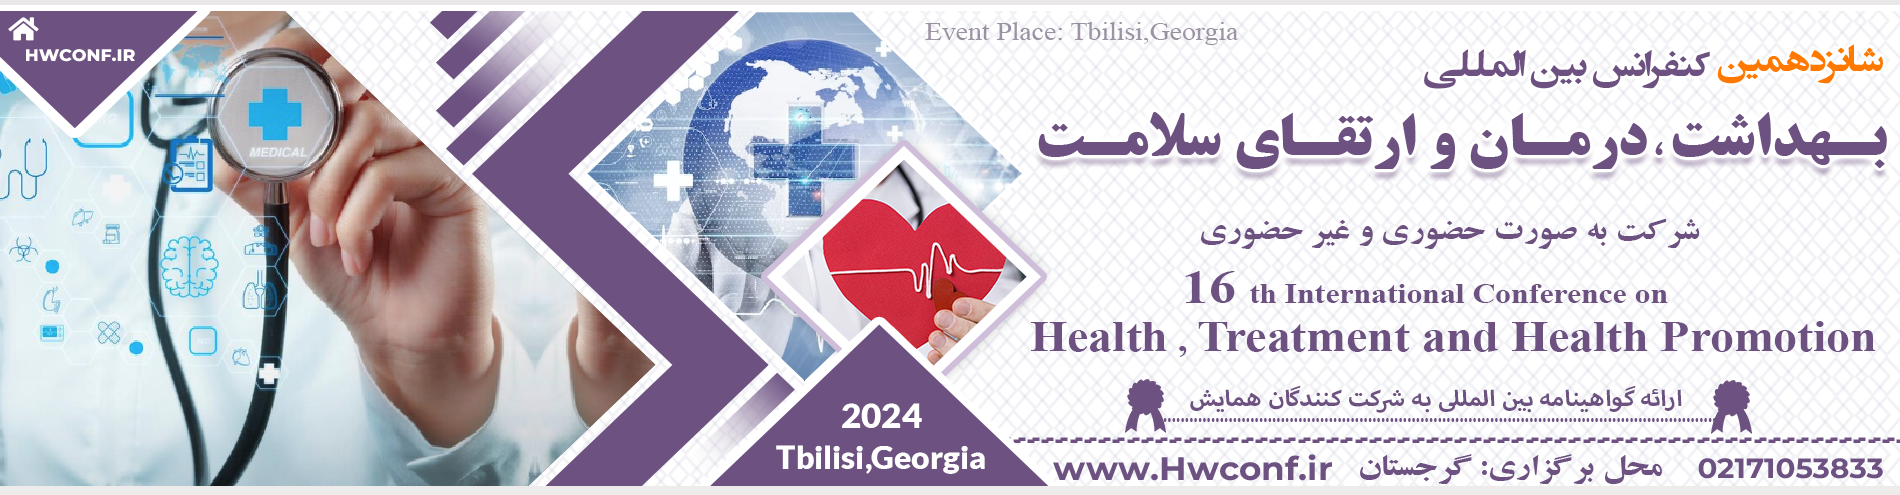 کنفرانس بین المللی بهداشت،درمان و ارتقای سلامت